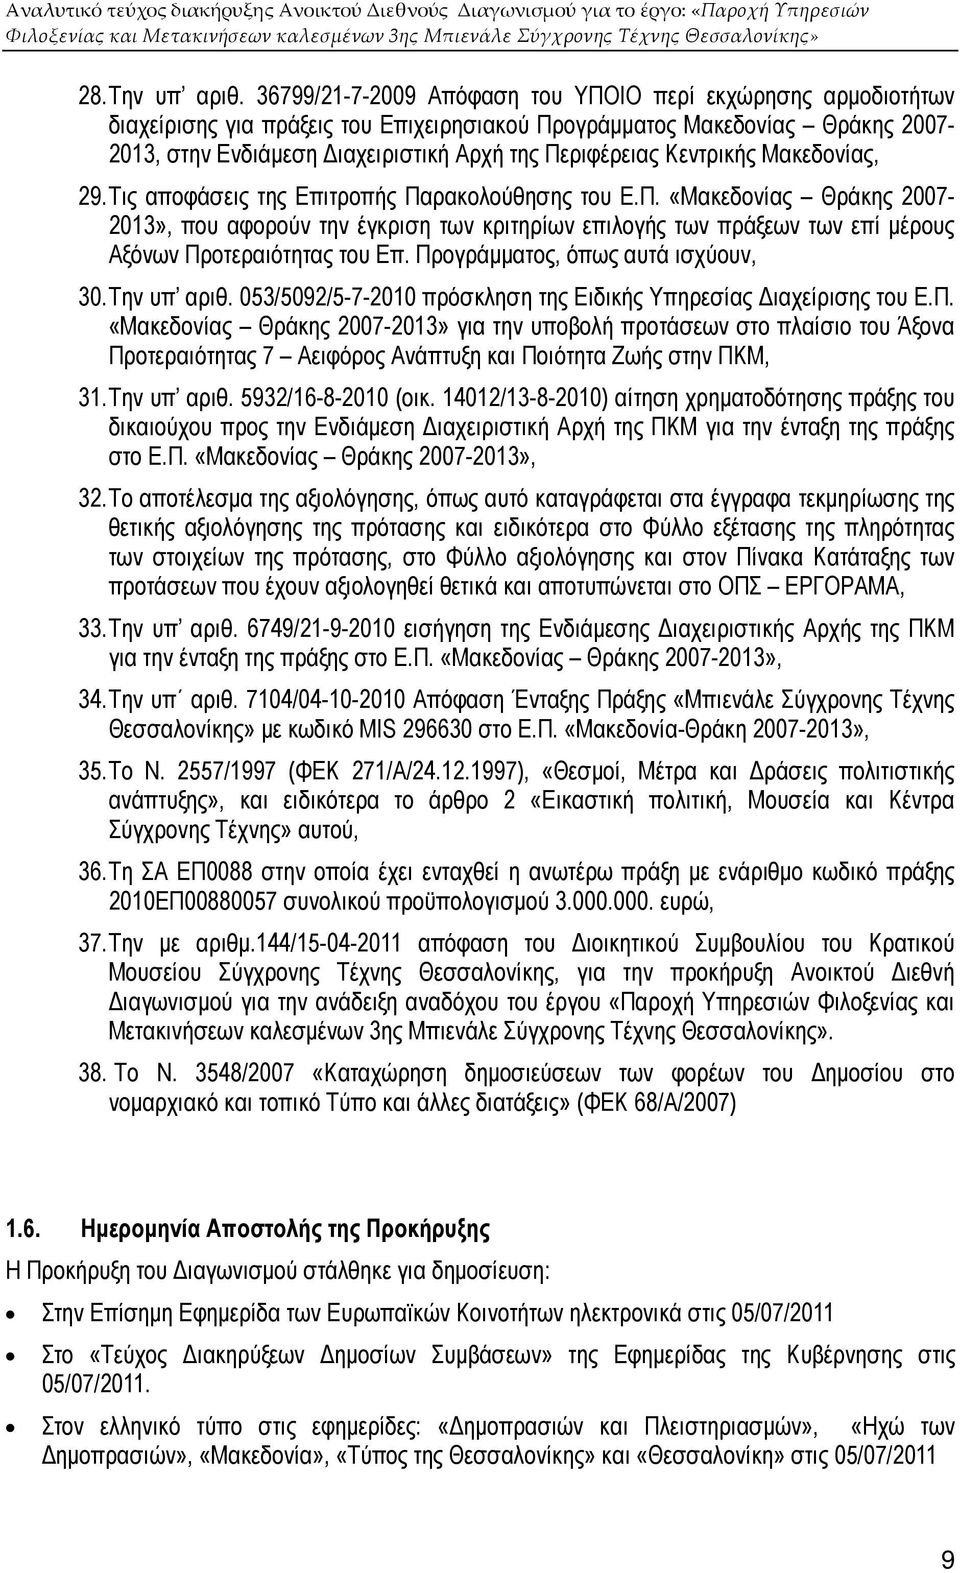 Κεντρικής Μακεδονίας, 29. Τις αποφάσεις της Επιτροπής Παρακολούθησης του Ε.Π. «Μακεδονίας Θράκης 2007-2013», που αφορούν την έγκριση των κριτηρίων επιλογής των πράξεων των επί µέρους Αξόνων Προτεραιότητας του Επ.